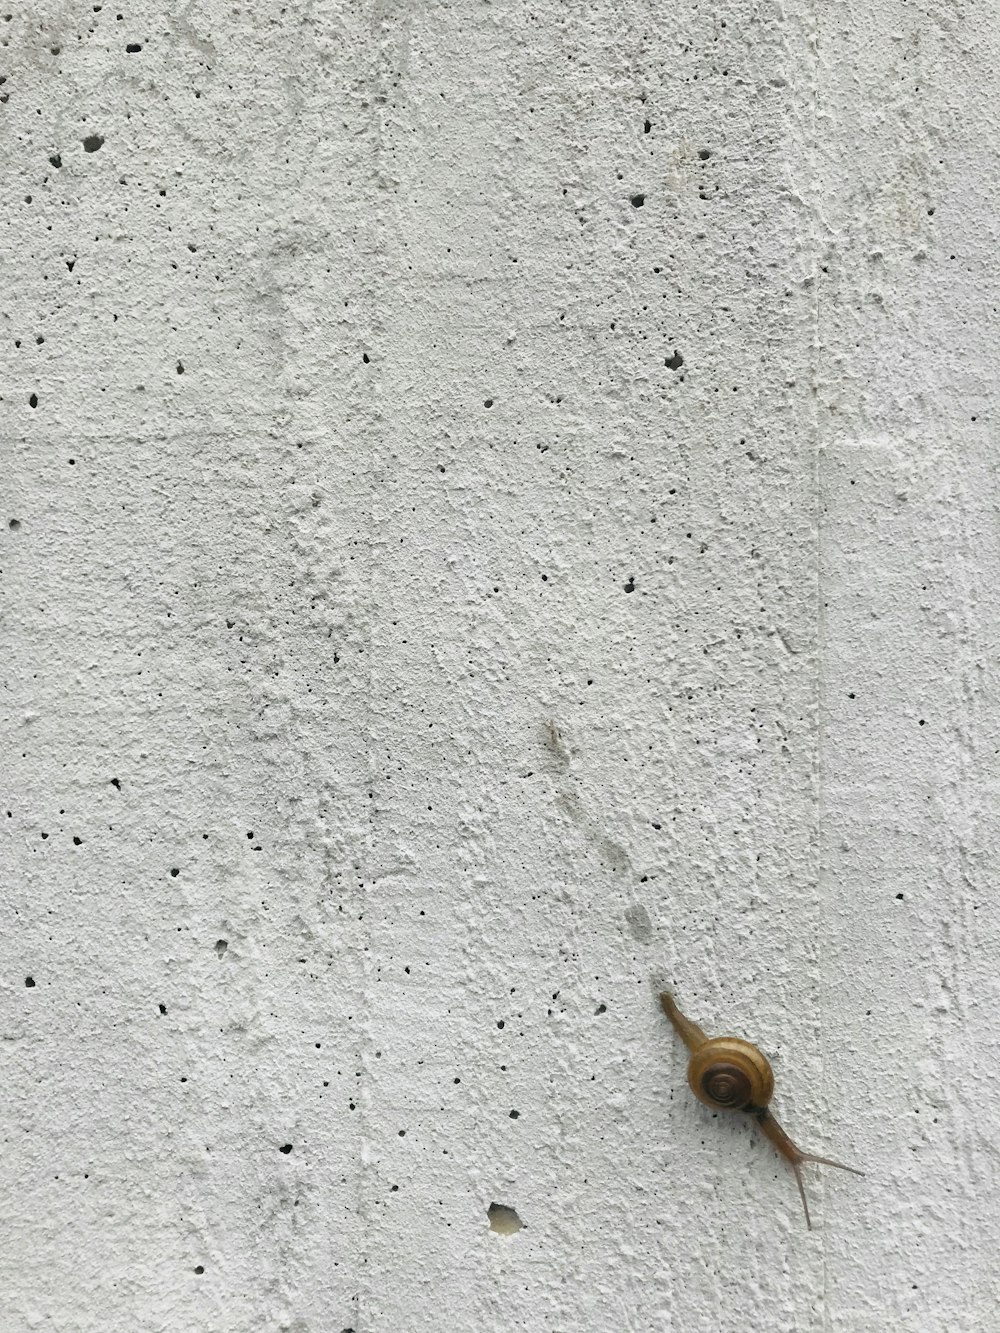 lumaca sopraccigliare su parete grigia